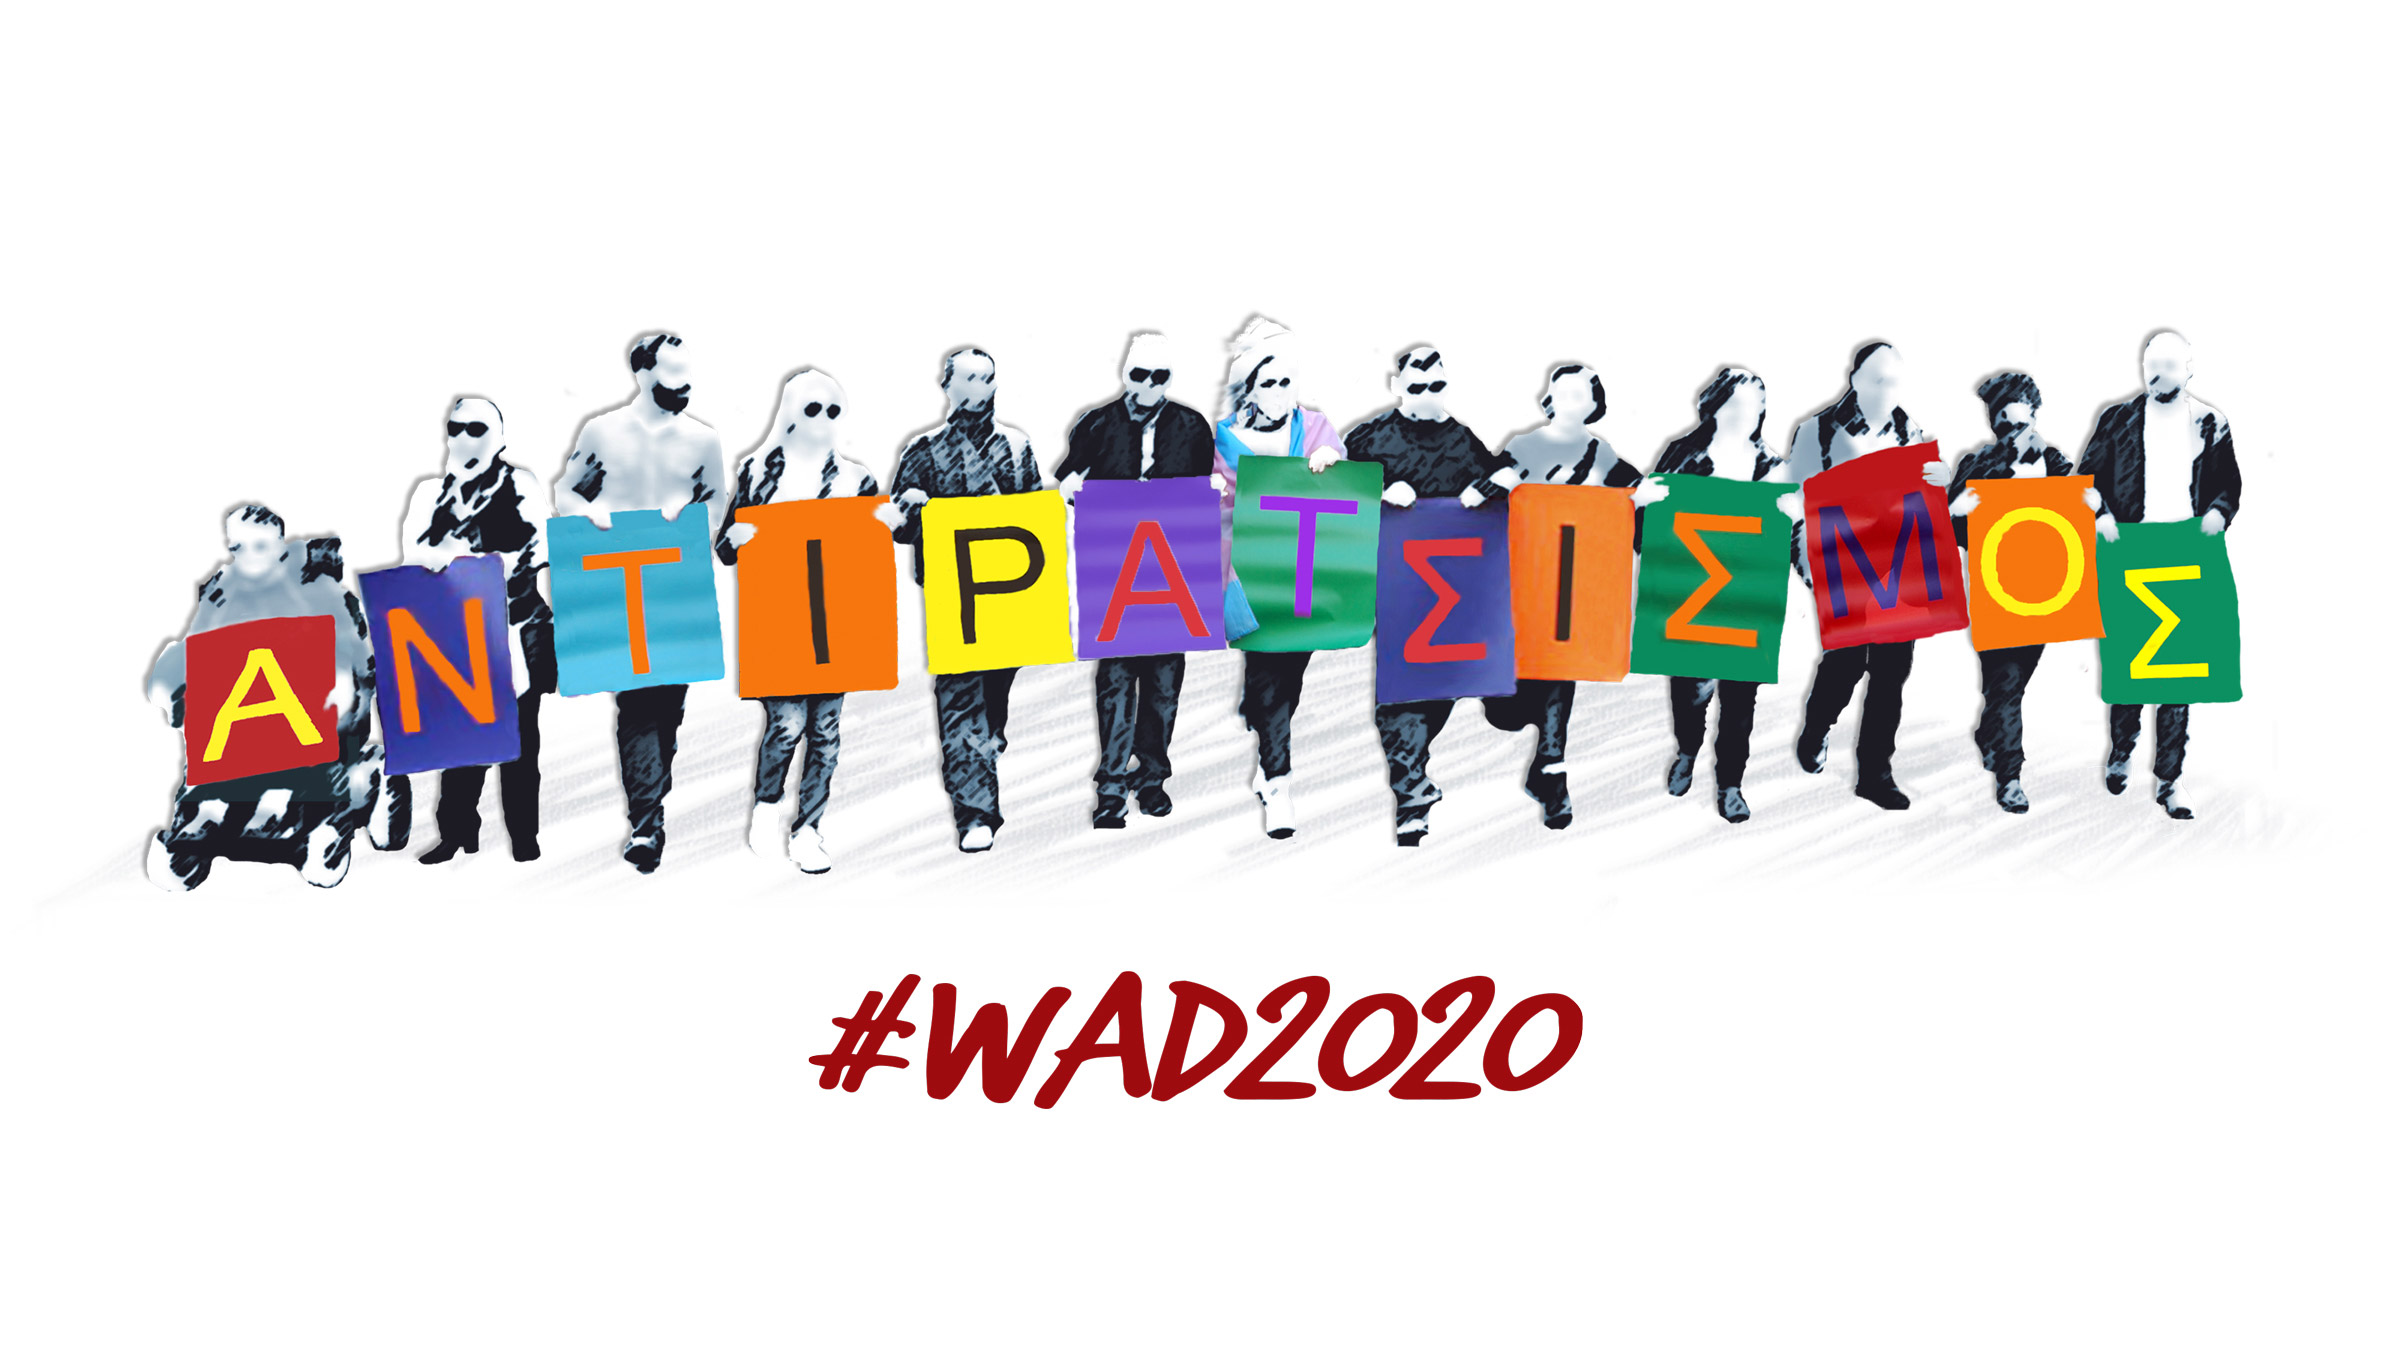 Στέλνουμε μήνυμα κατά των διακρίσεων - WAD2020